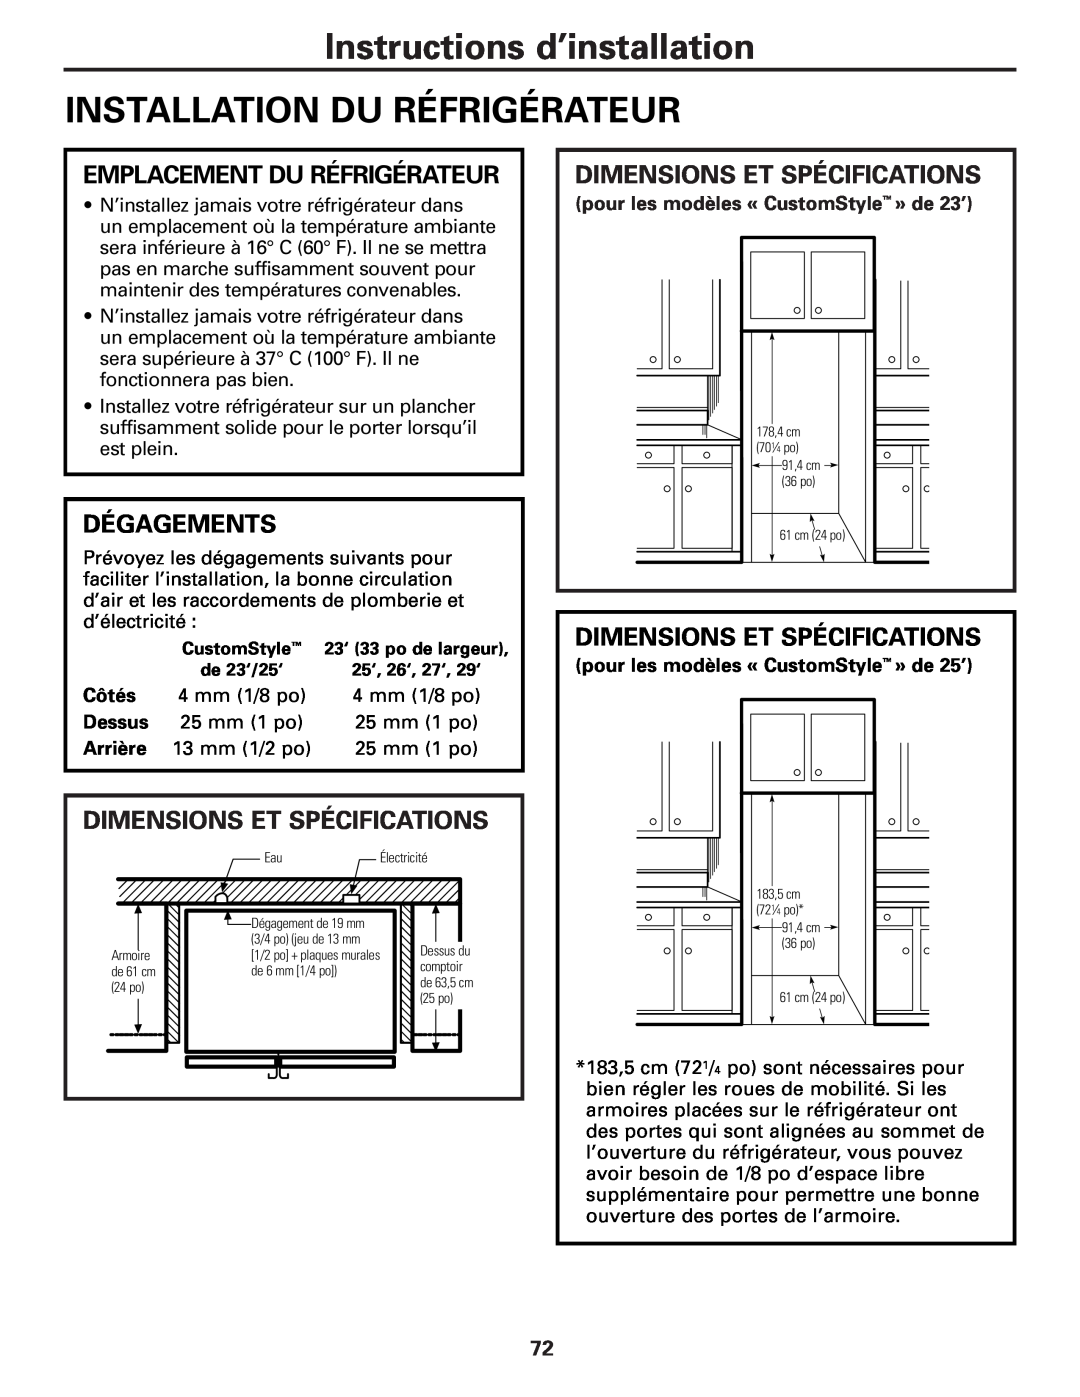 GE 49-60456 Installation Du Réfrigérateur, Emplacement Du Réfrigérateur, Dégagements, Dimensions Et Spécifications, Côtés 